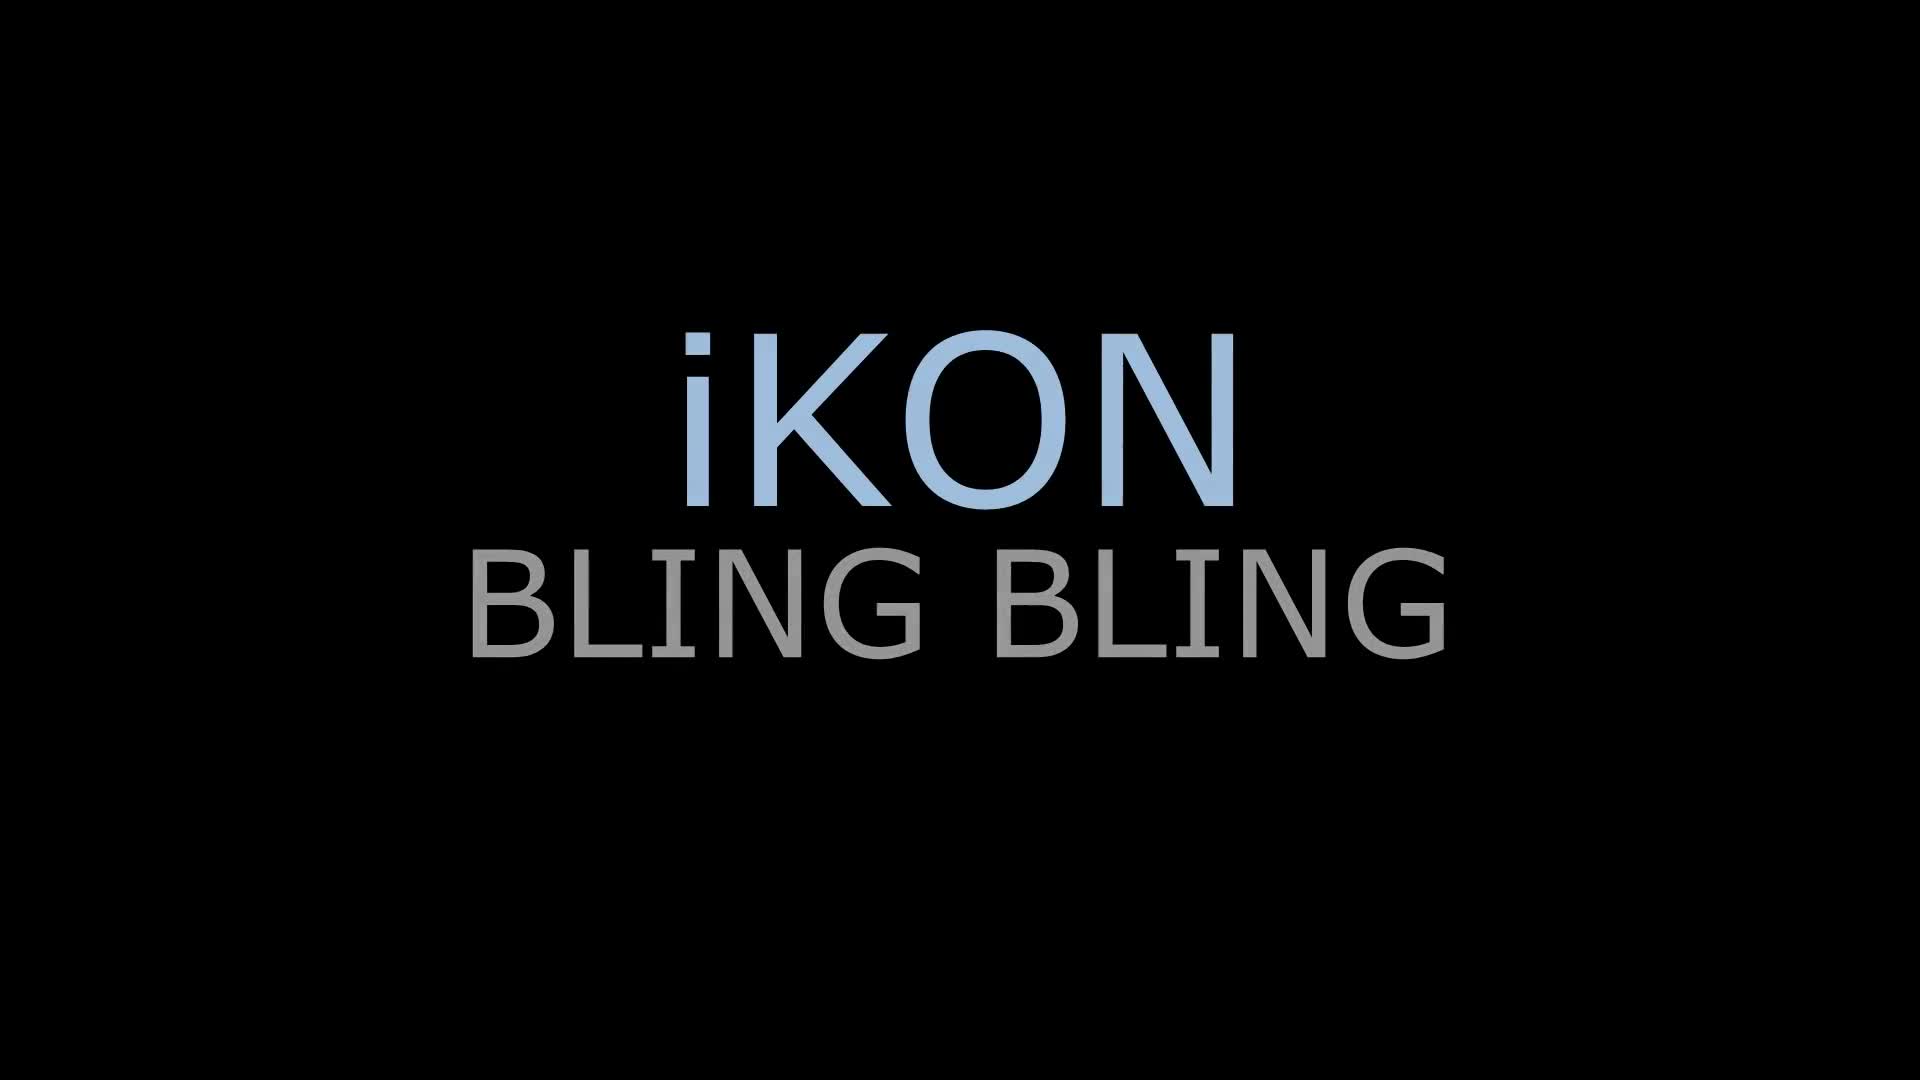 iKON – BLING BLING 아이콘 블링블링 cover dance WAVEYA 웨이브야